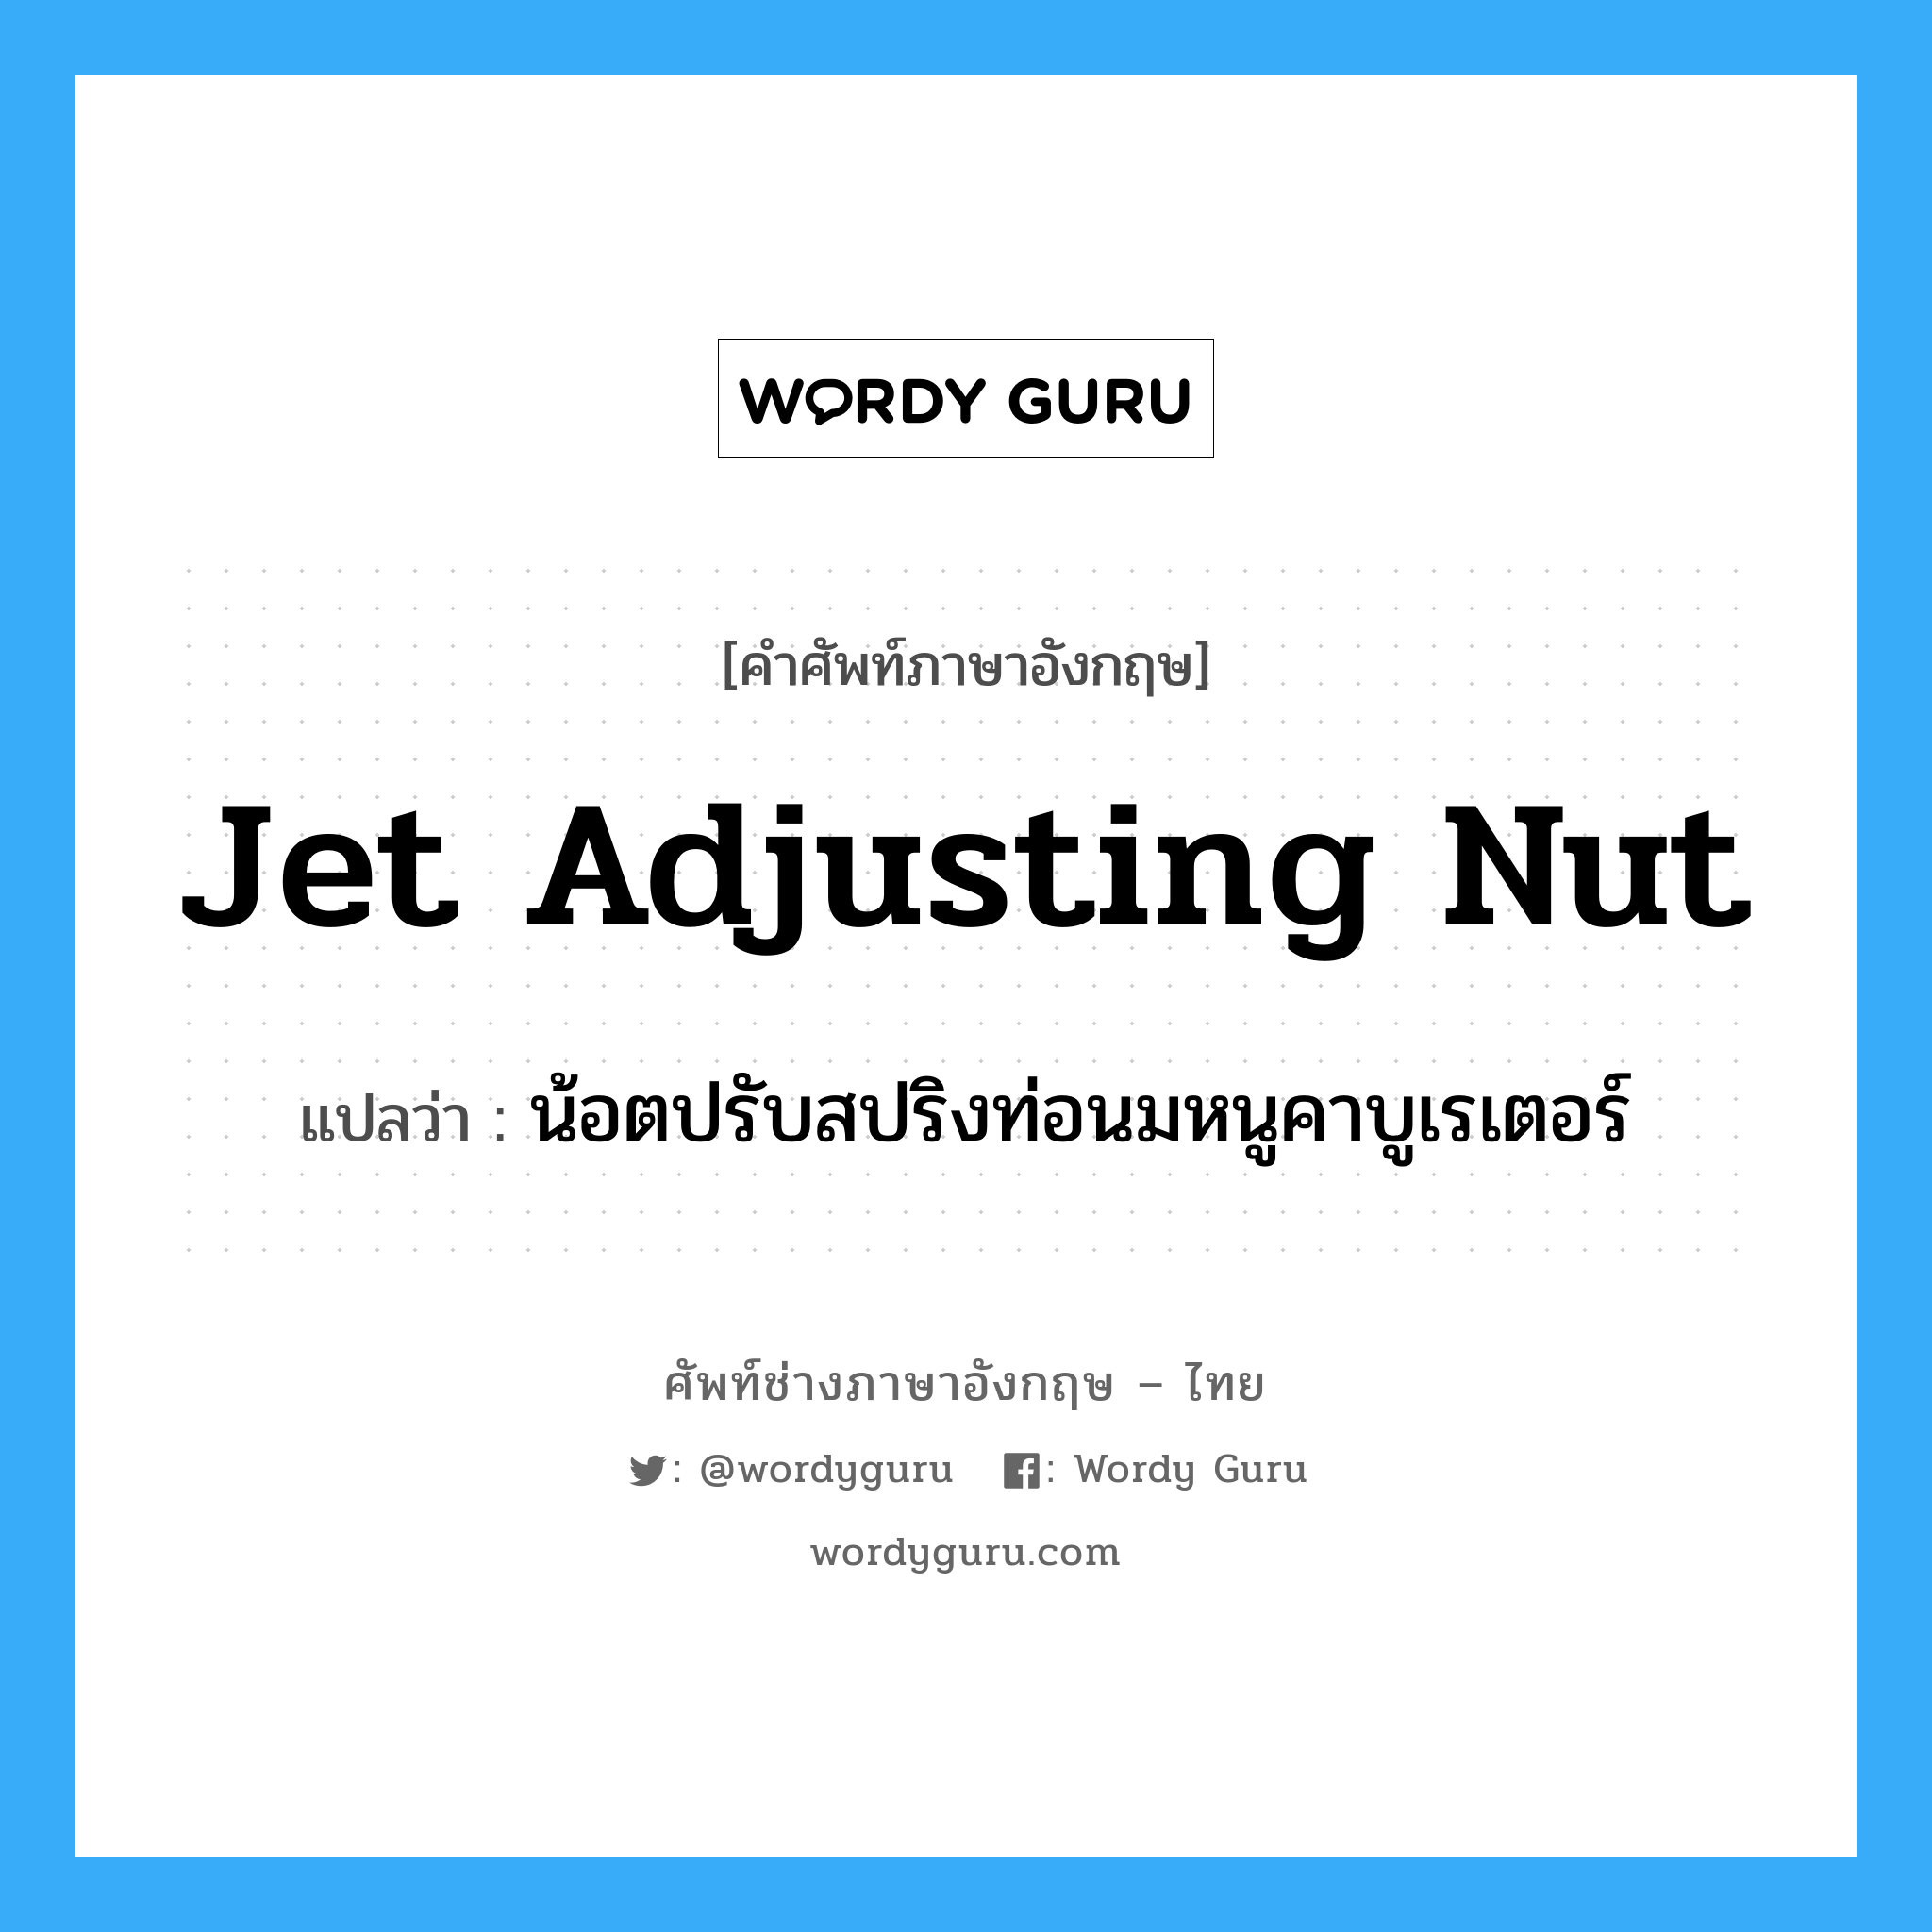 jet adjusting nut แปลว่า?, คำศัพท์ช่างภาษาอังกฤษ - ไทย jet adjusting nut คำศัพท์ภาษาอังกฤษ jet adjusting nut แปลว่า น้อตปรับสปริงท่อนมหนูคาบูเรเตอร์